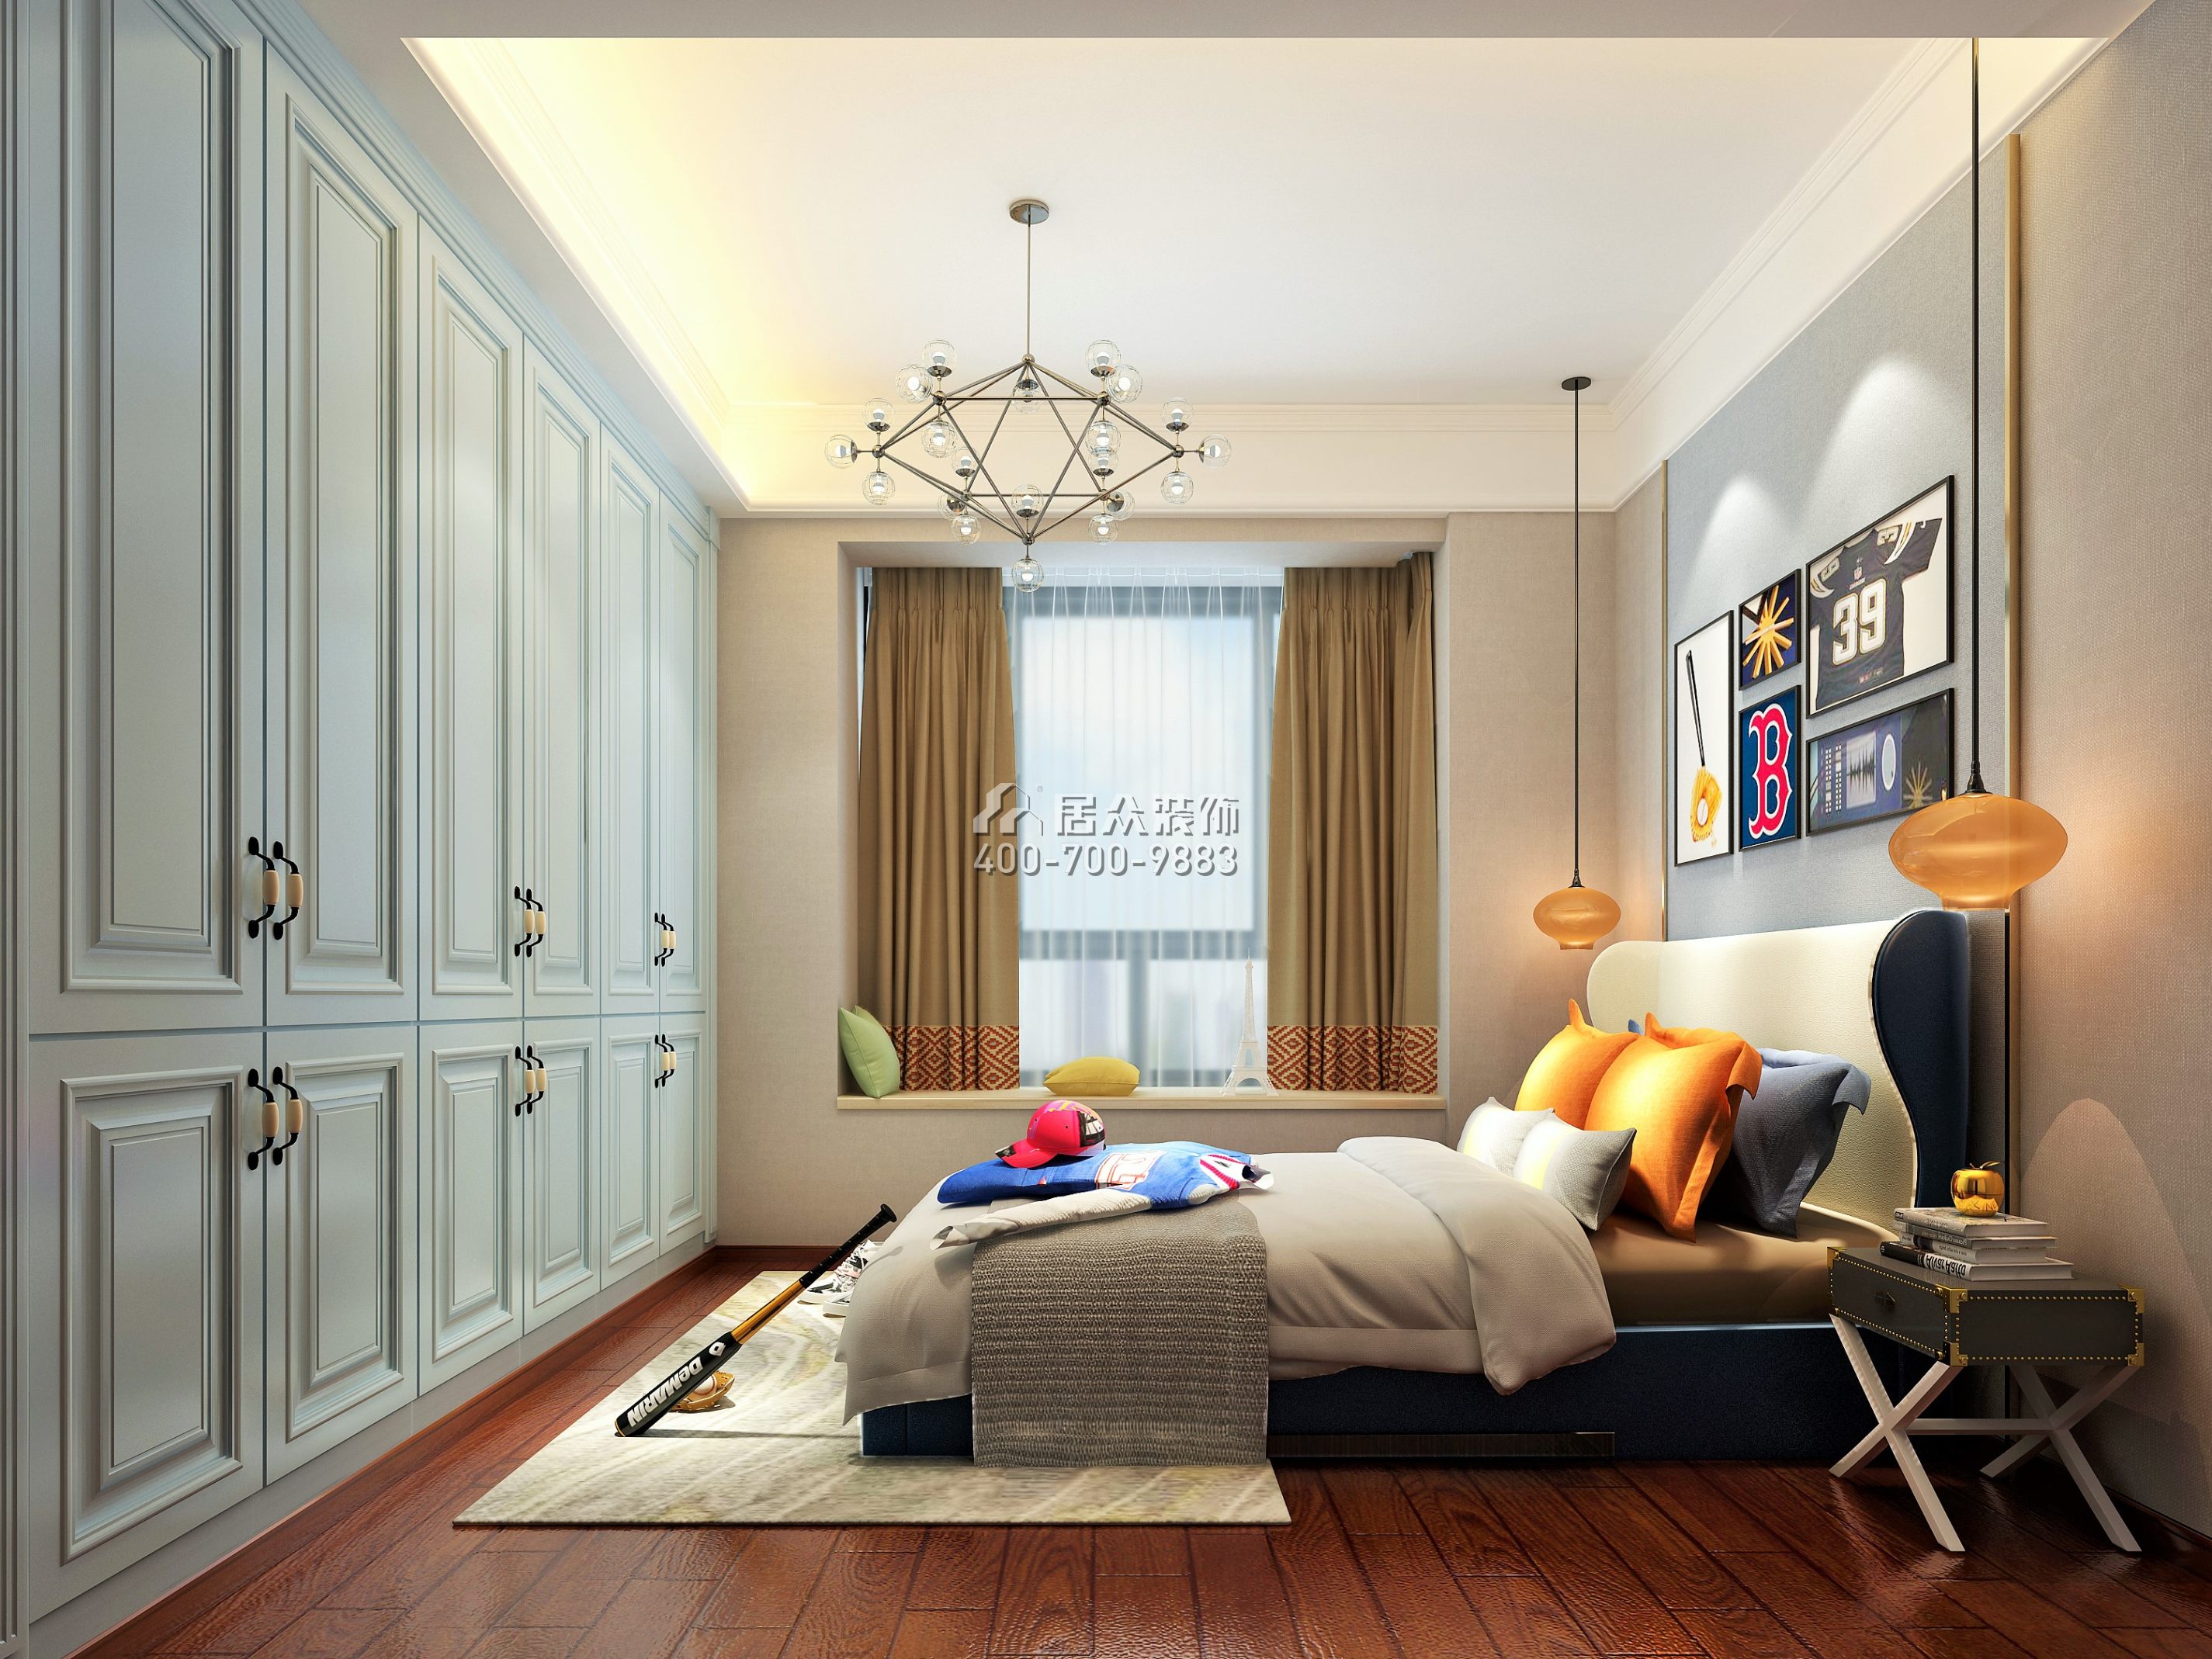 海逸豪庭170平方米中式風格別墅戶型臥室裝修效果圖